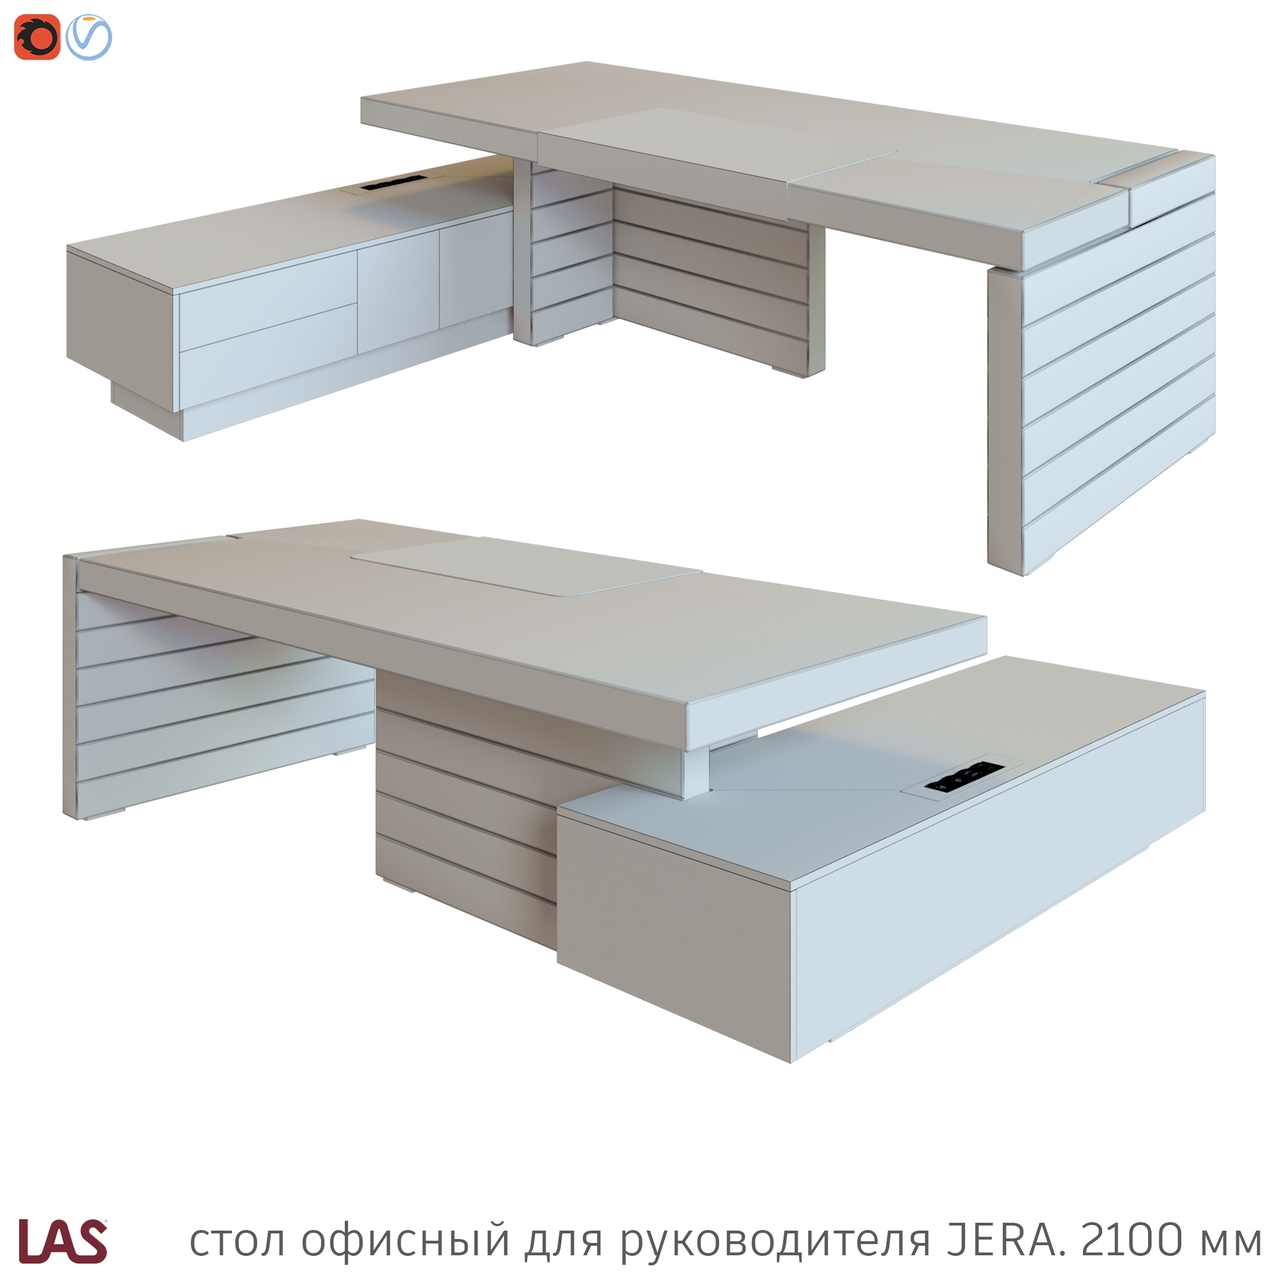 Превью G 3D-модели офисного стола LAS Jera 159953 / 159956